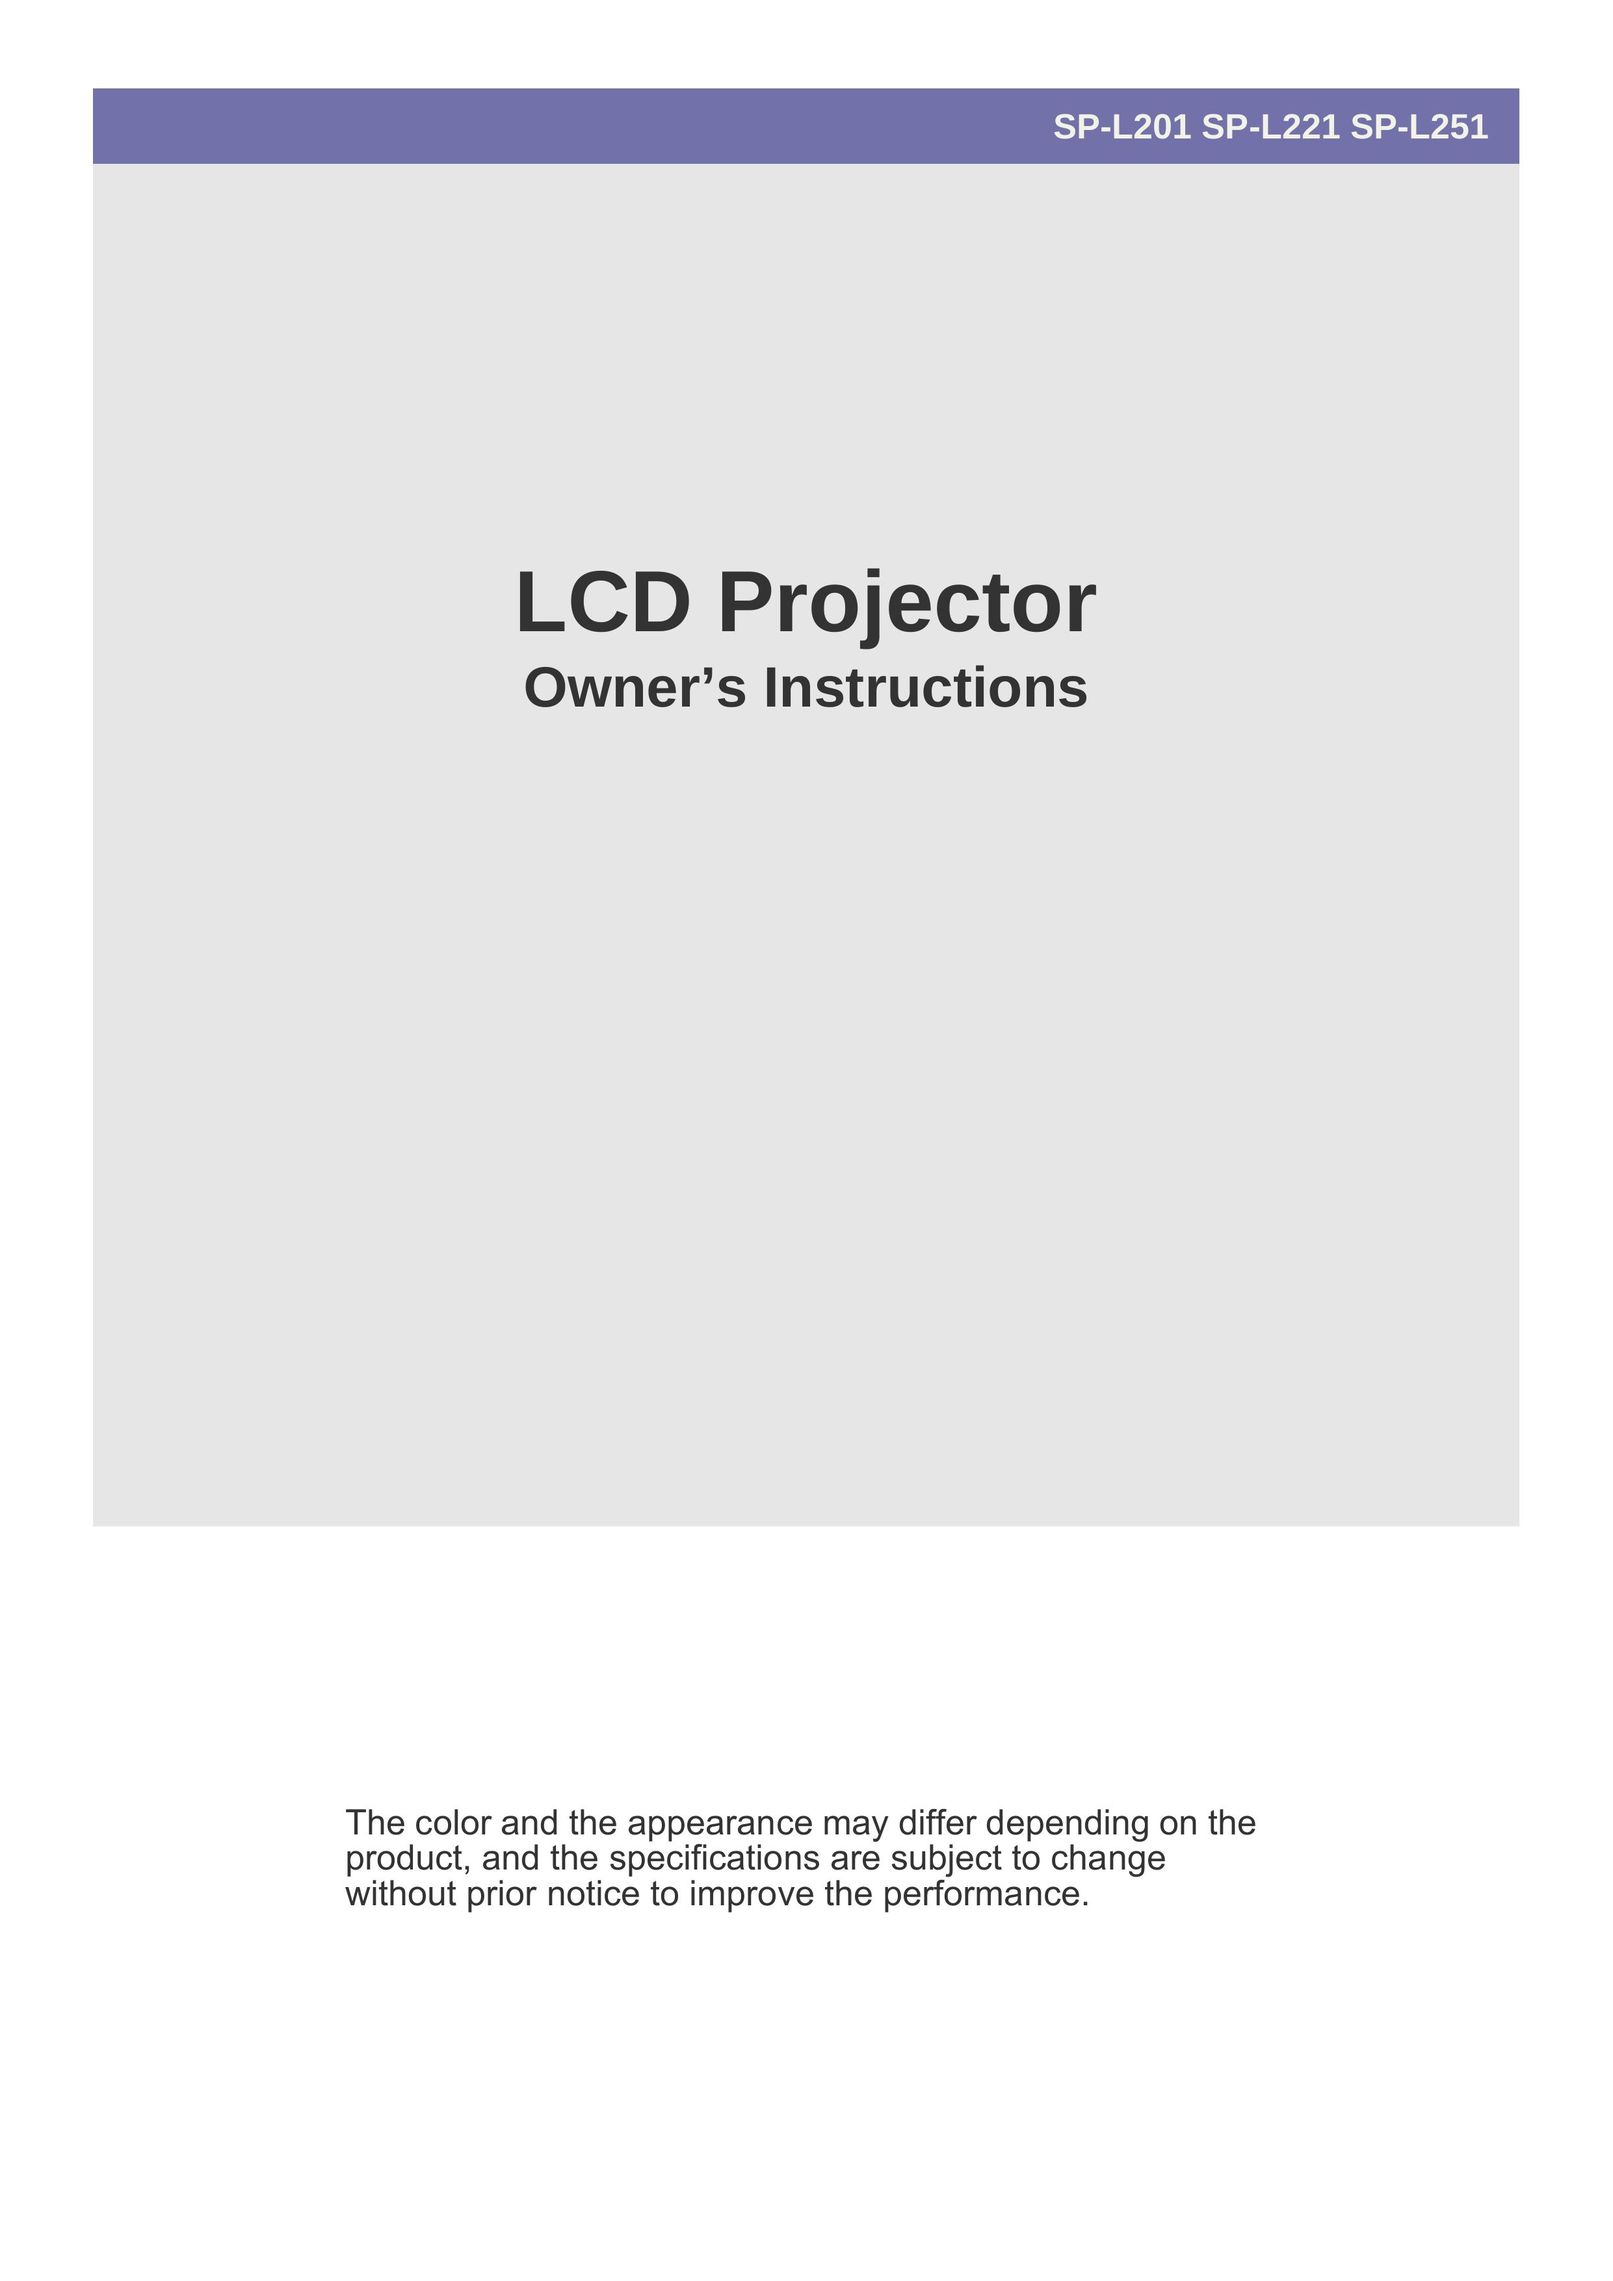 Samsung SP-L251 Projector User Manual